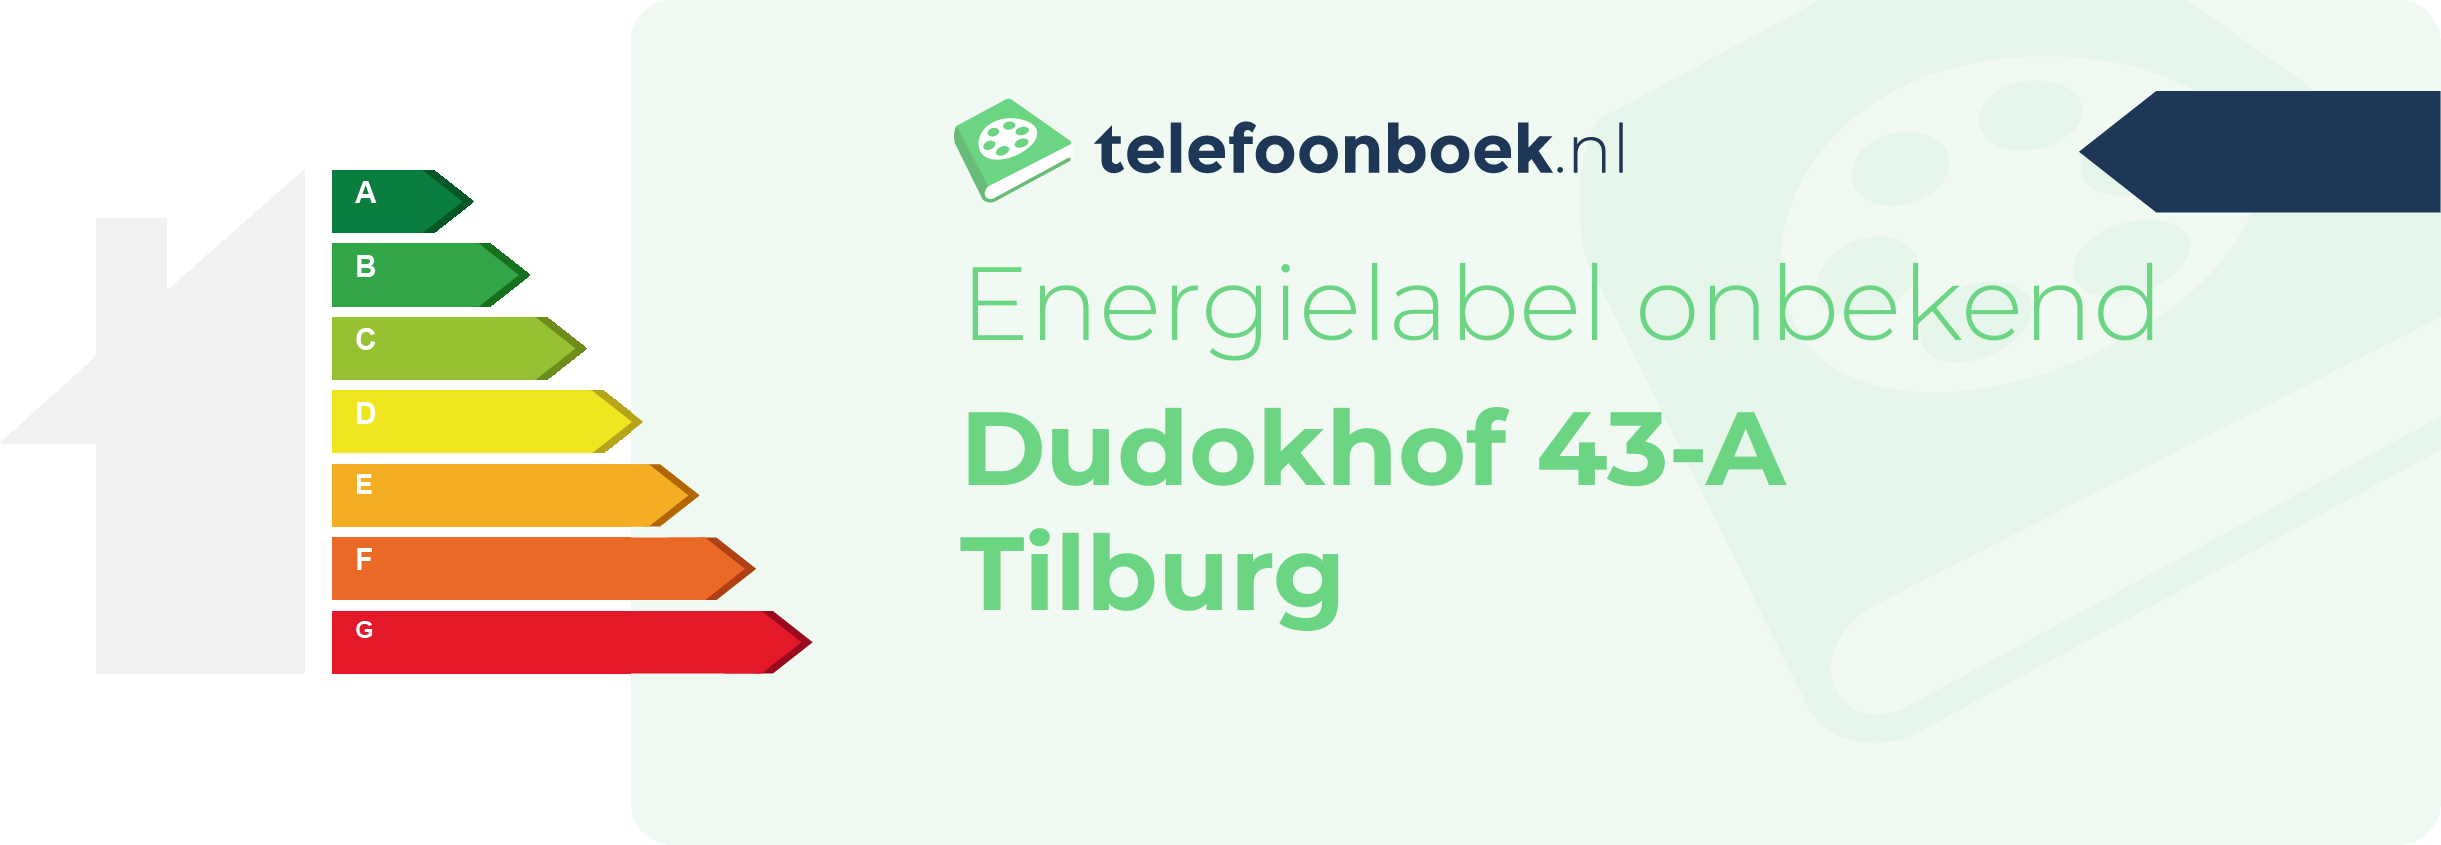 Energielabel Dudokhof 43-A Tilburg